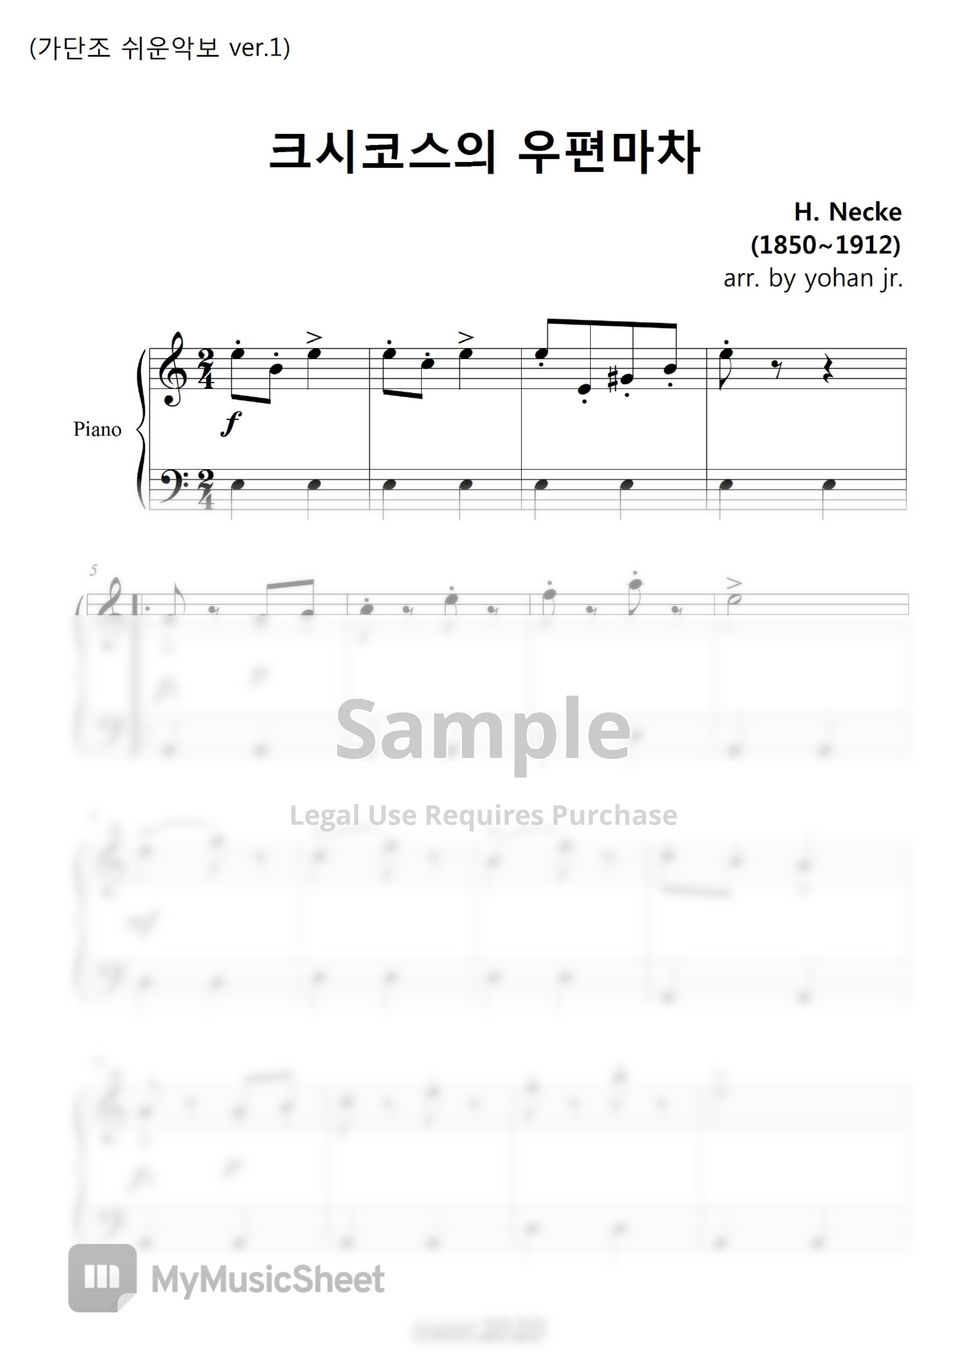 H. Necke - Csiskos Post in A minor (easy piano ver.1) by classic2020